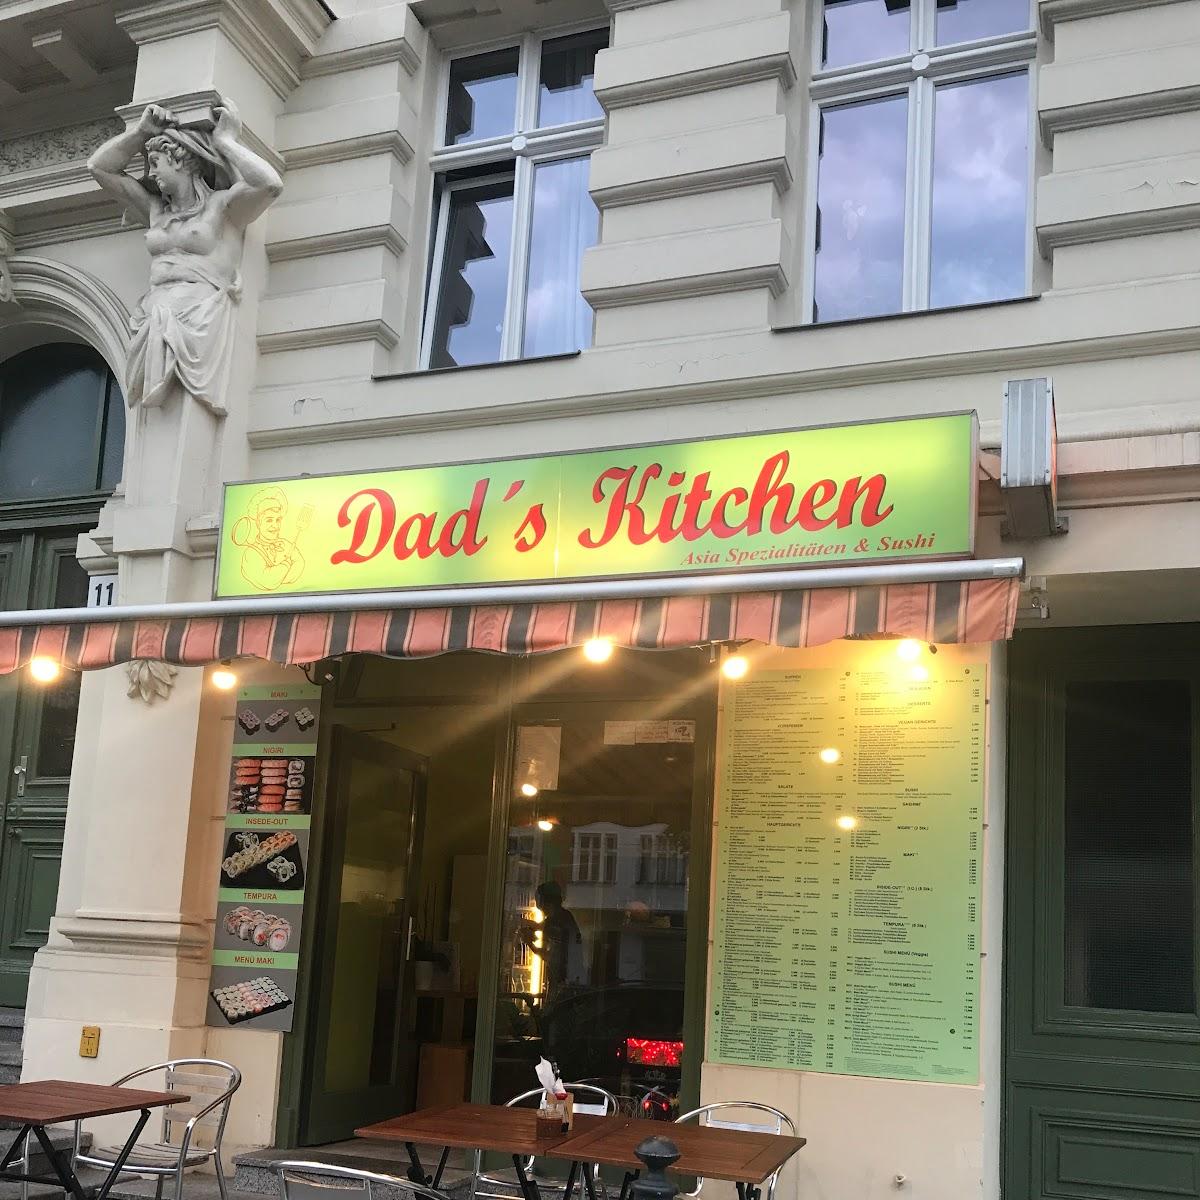 Restaurant "Dad’s Kitchen" in Berlin